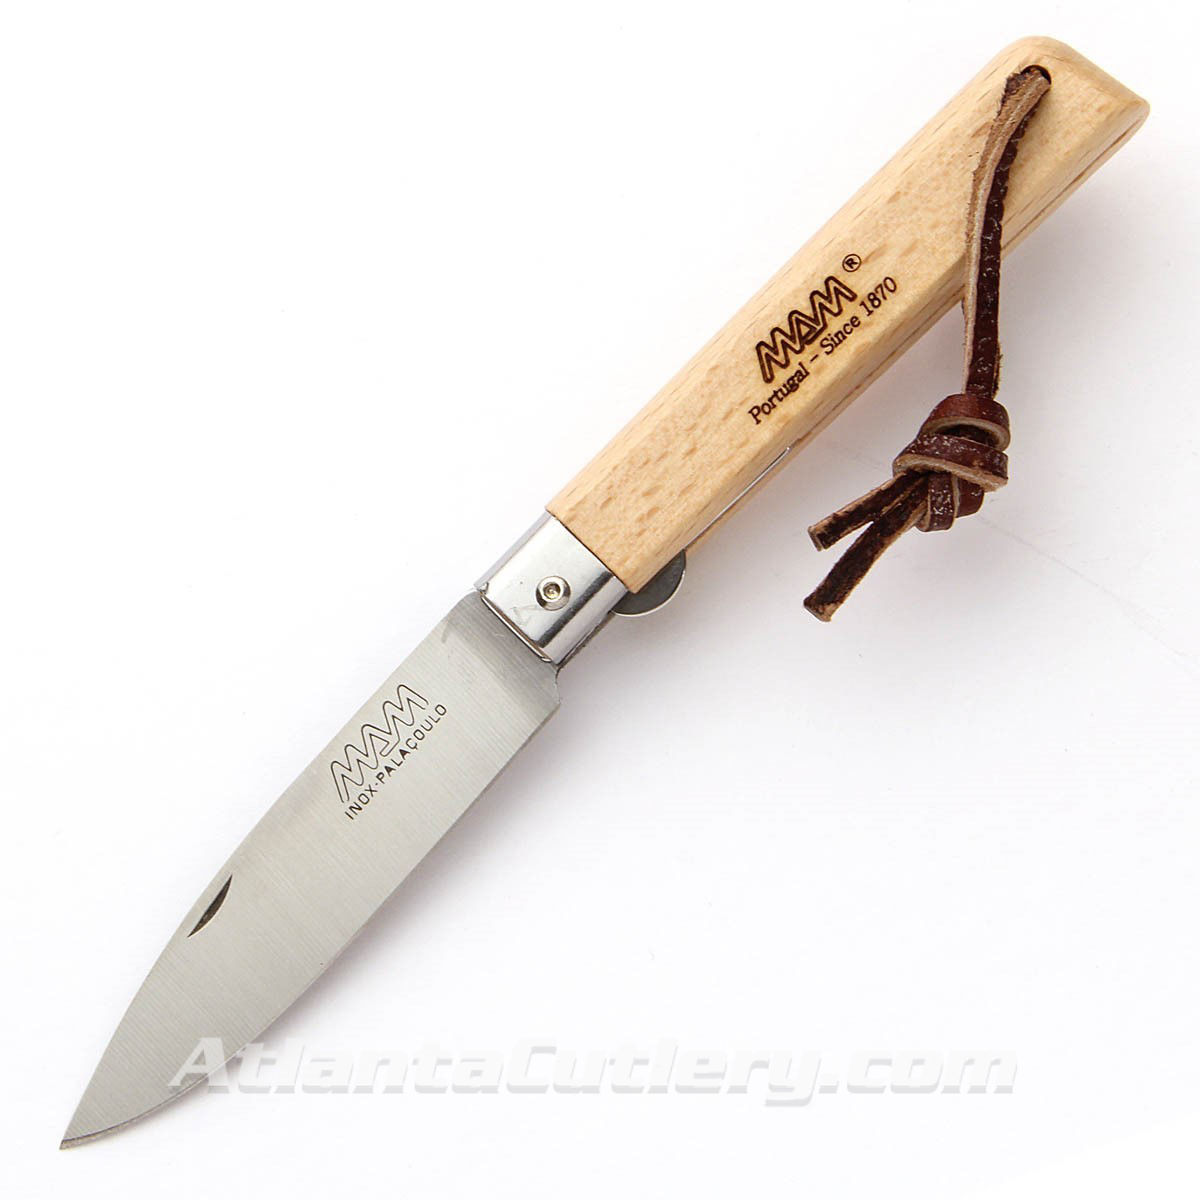 Palacoula knife